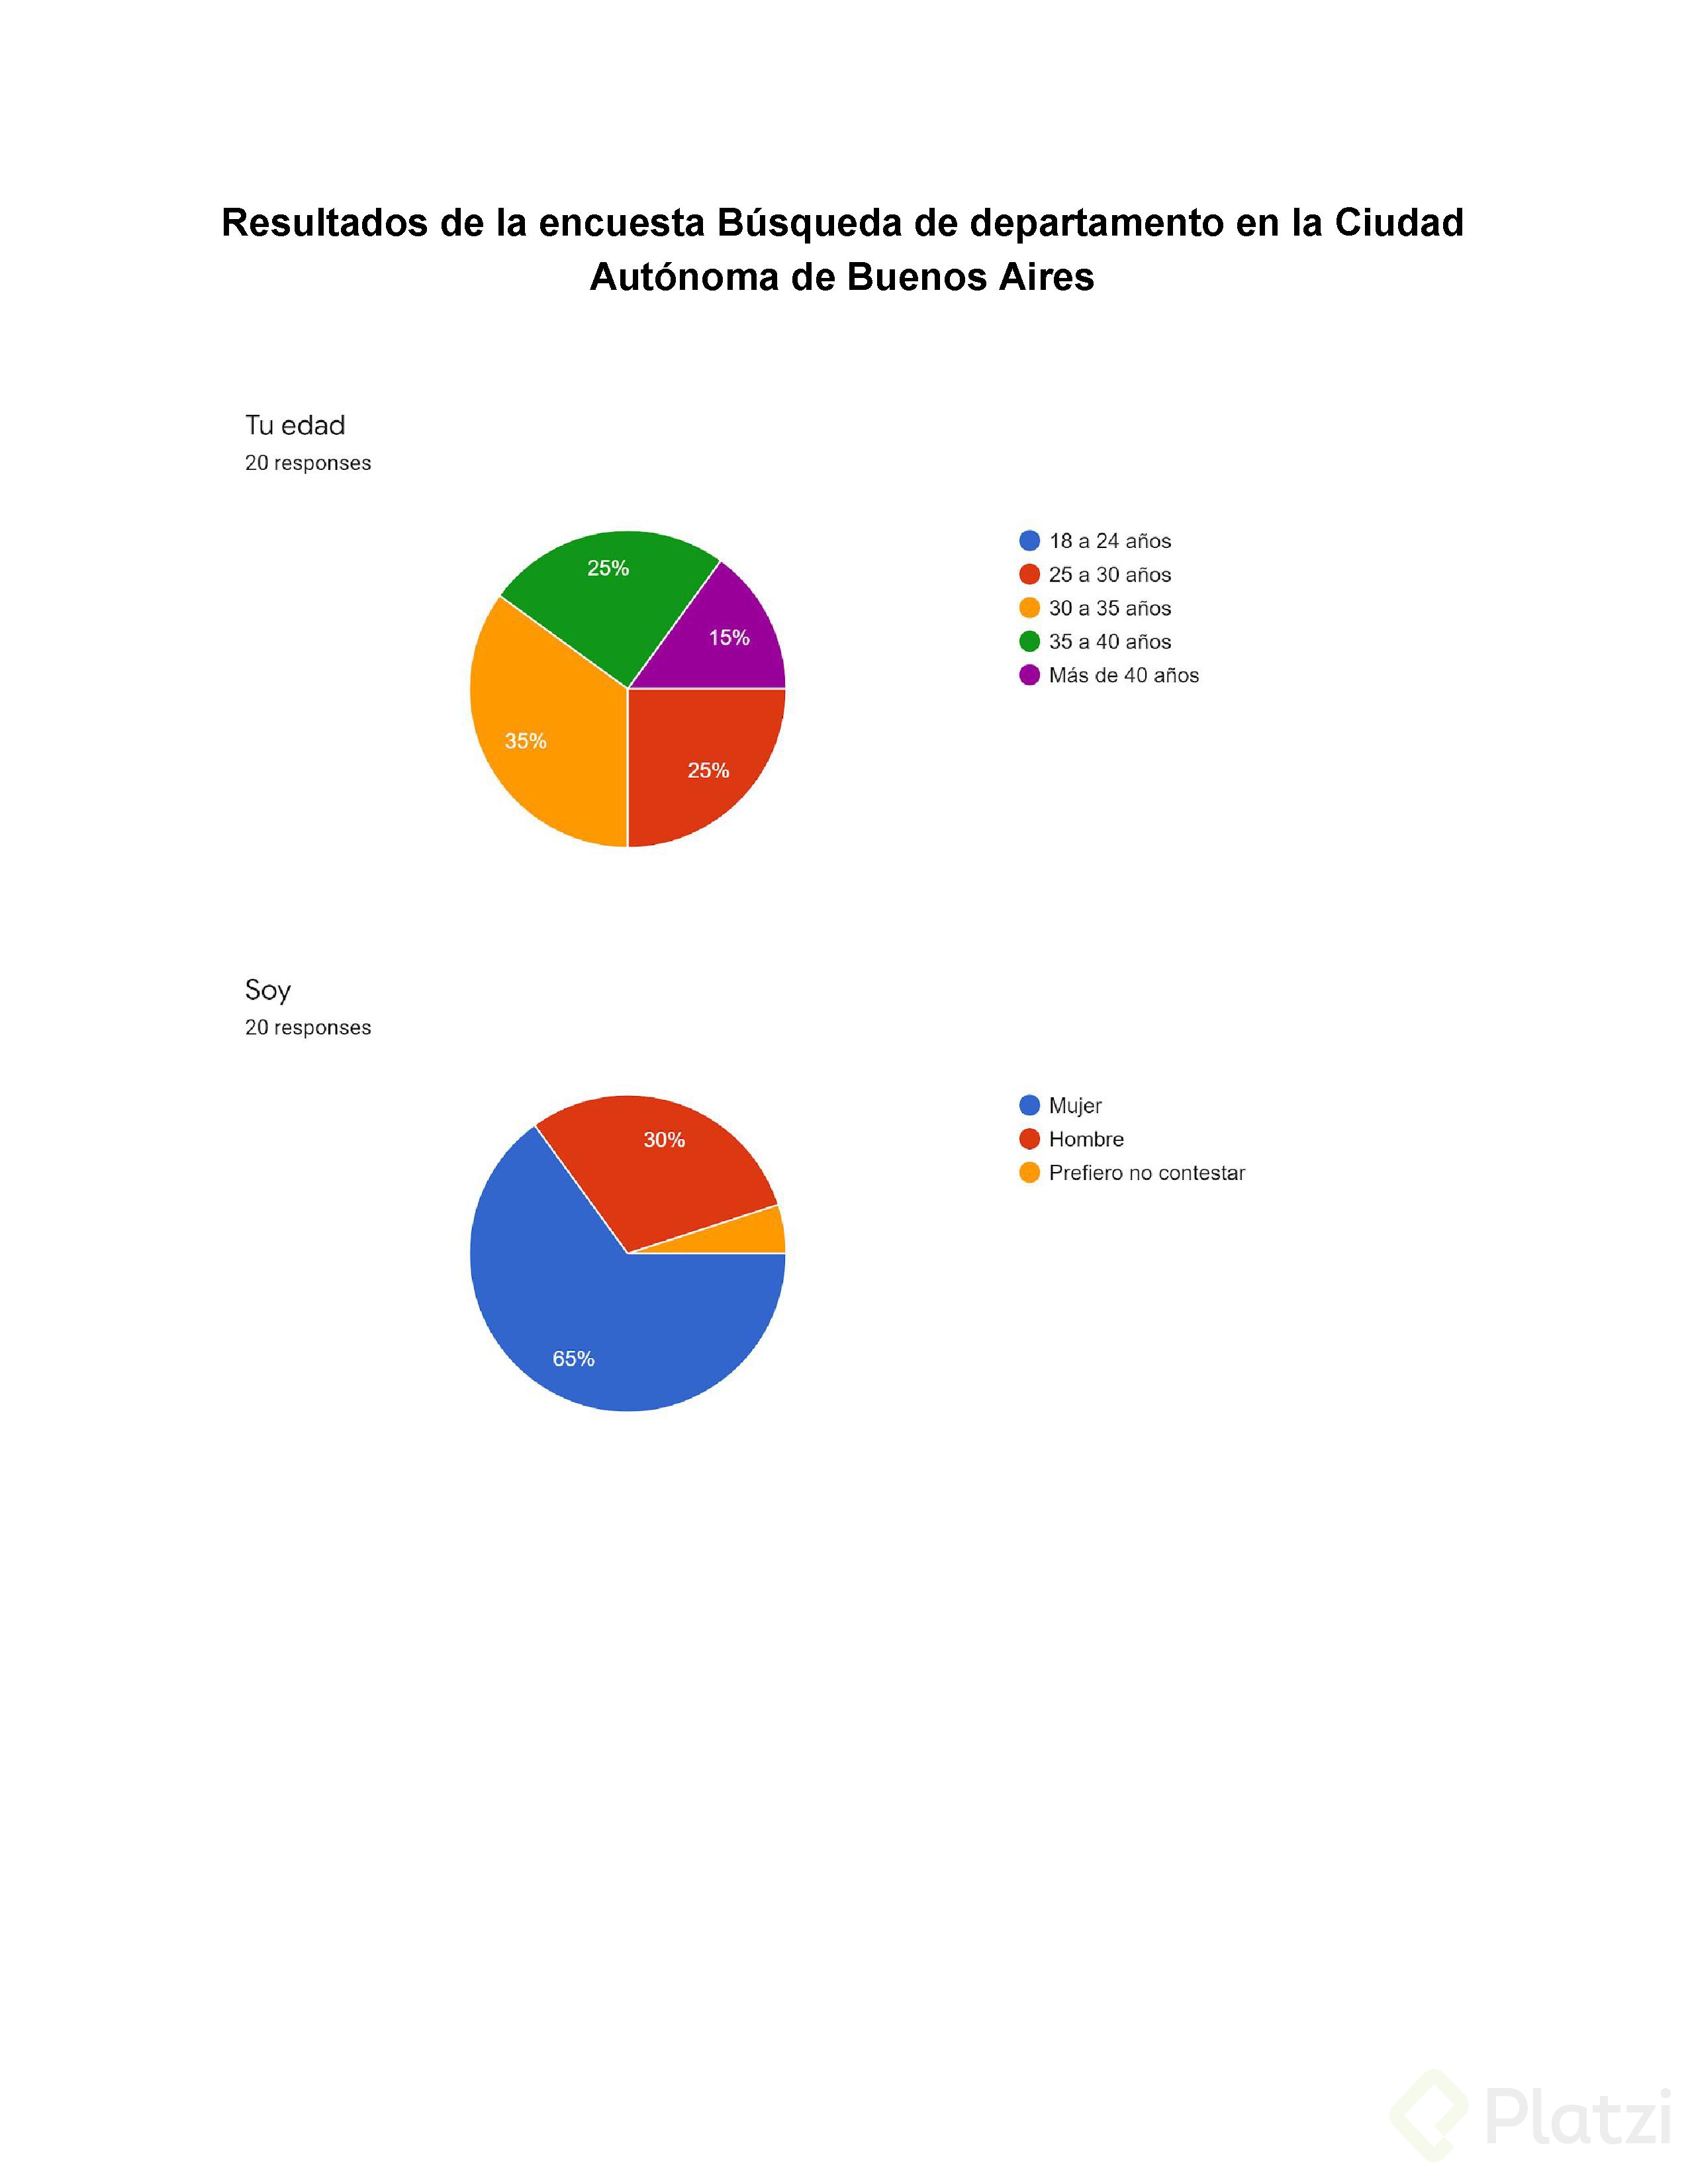 Resultados de la encuesta BÃºsqueda de departamento en la Ciudad AutÃ³noma de Buenos Aires.jpg